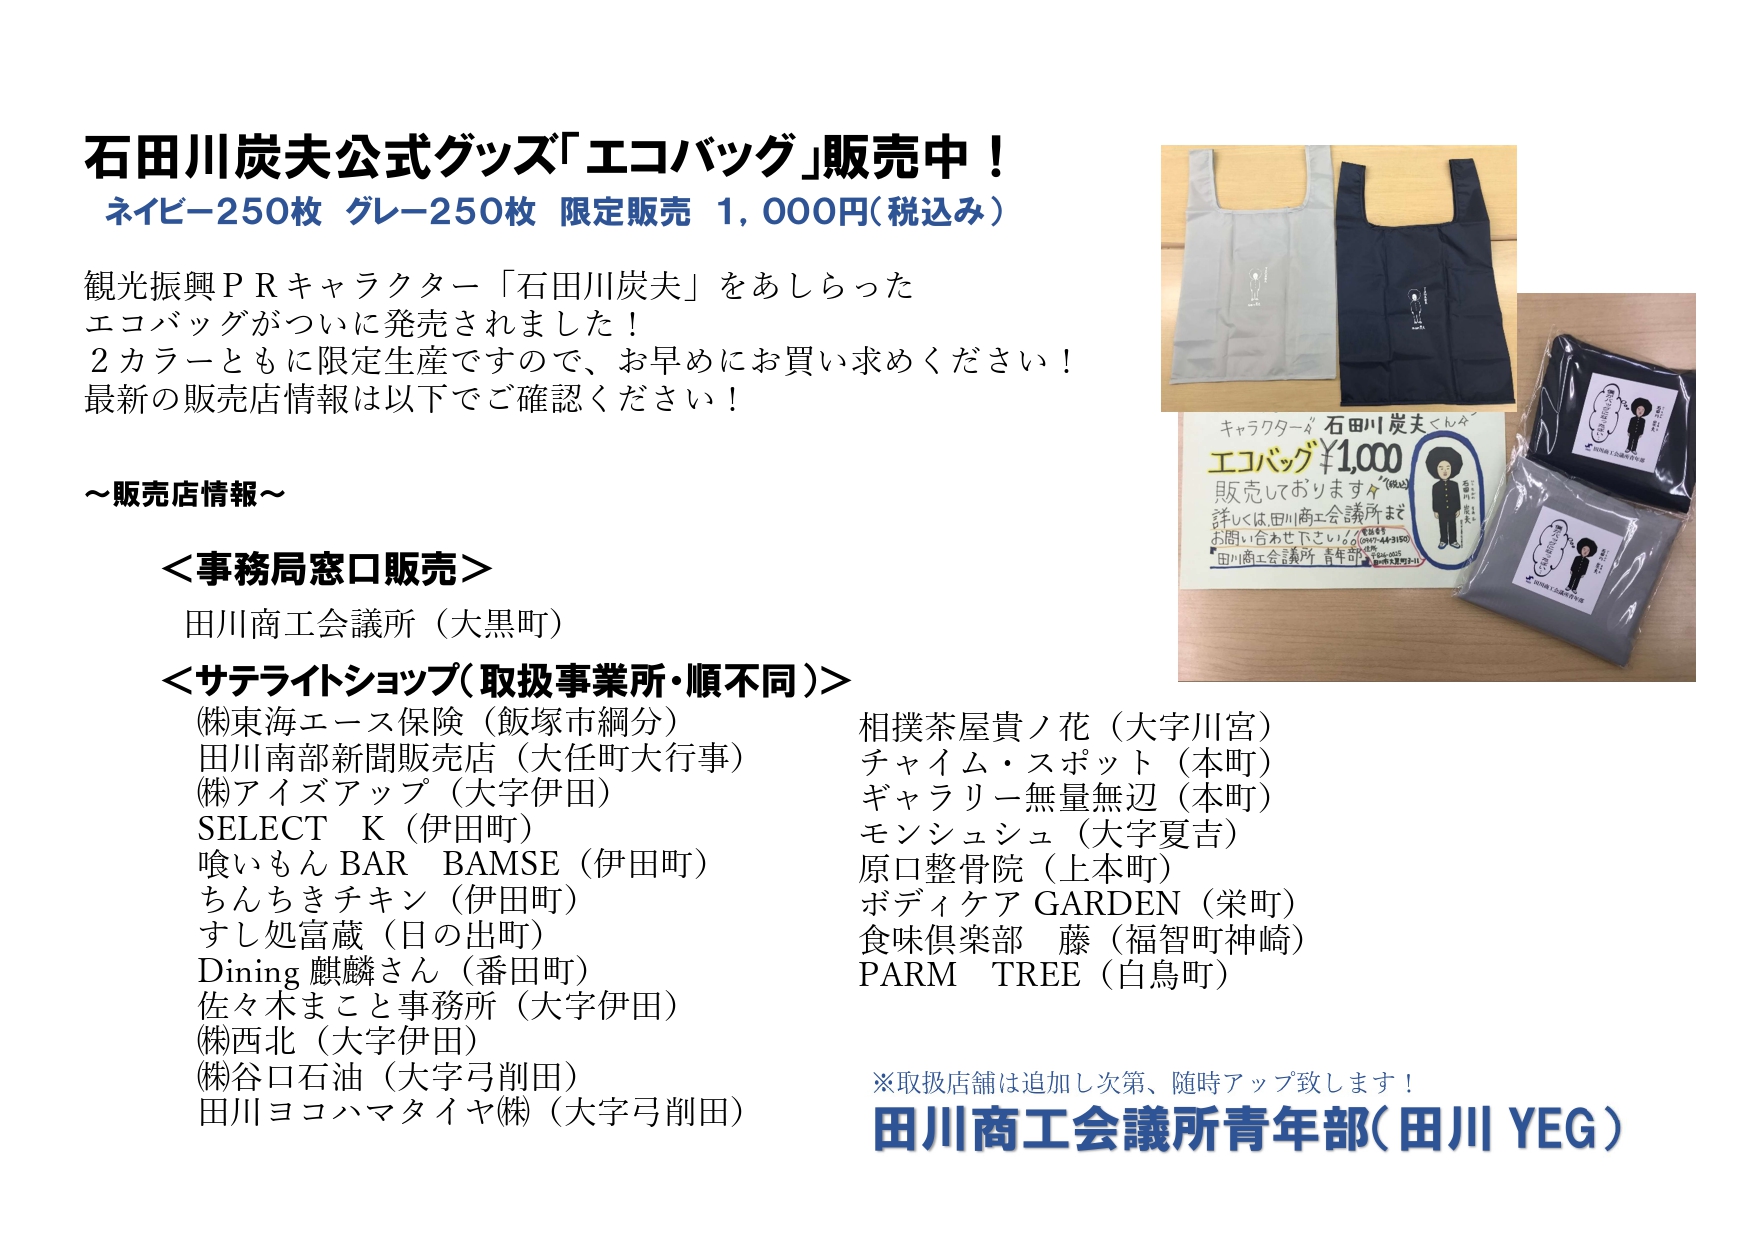 田川商工会議所 - 紙幣